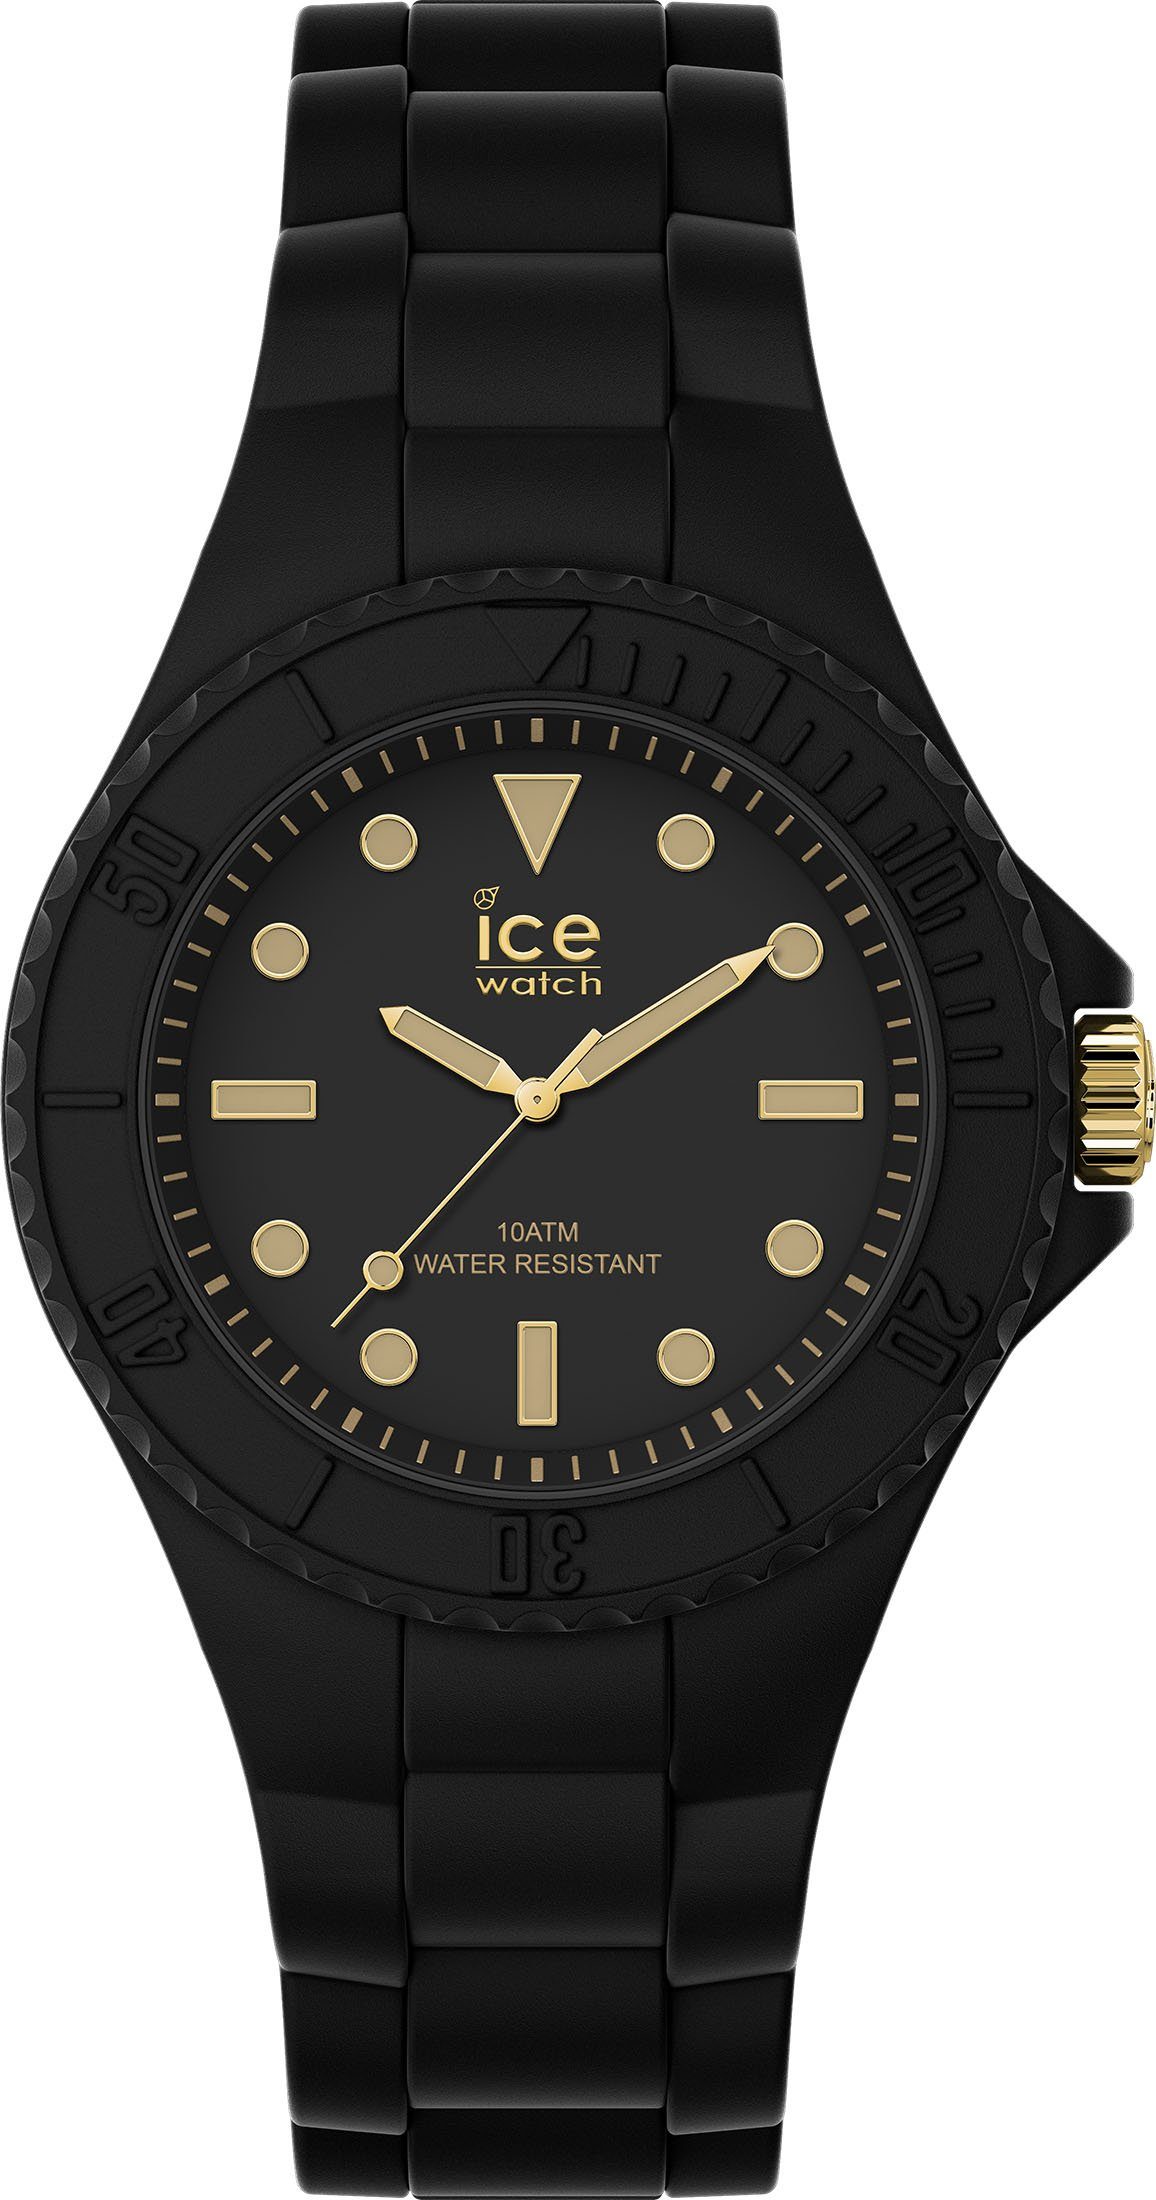 019143 generation ice-watch ICE - schwarz Glam, Quarzuhr